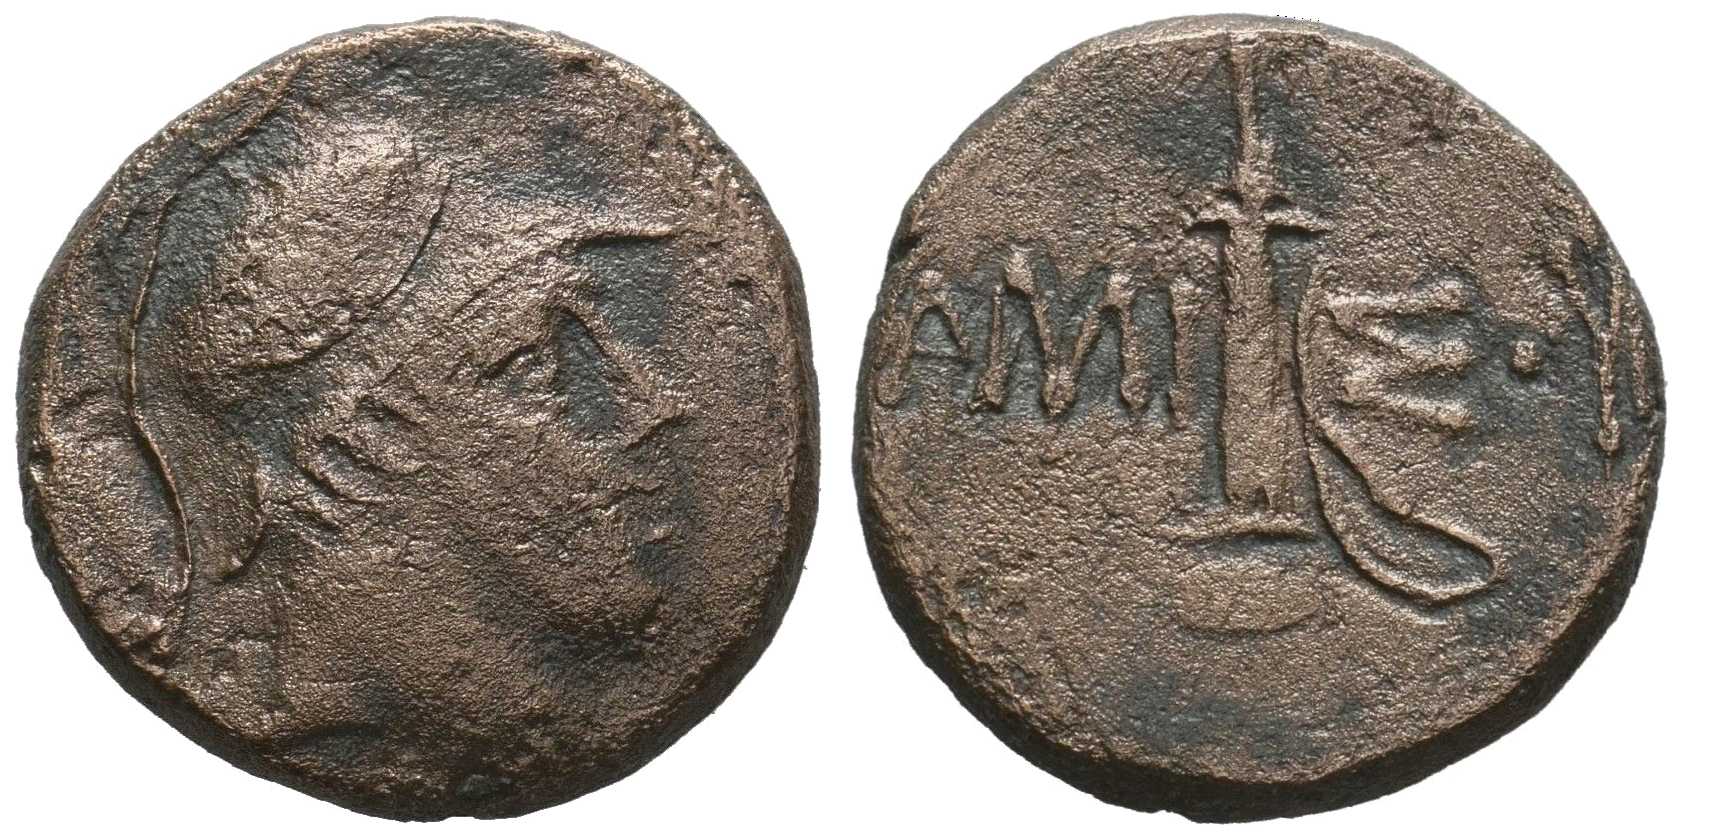 6571 Amisus Pontus AE